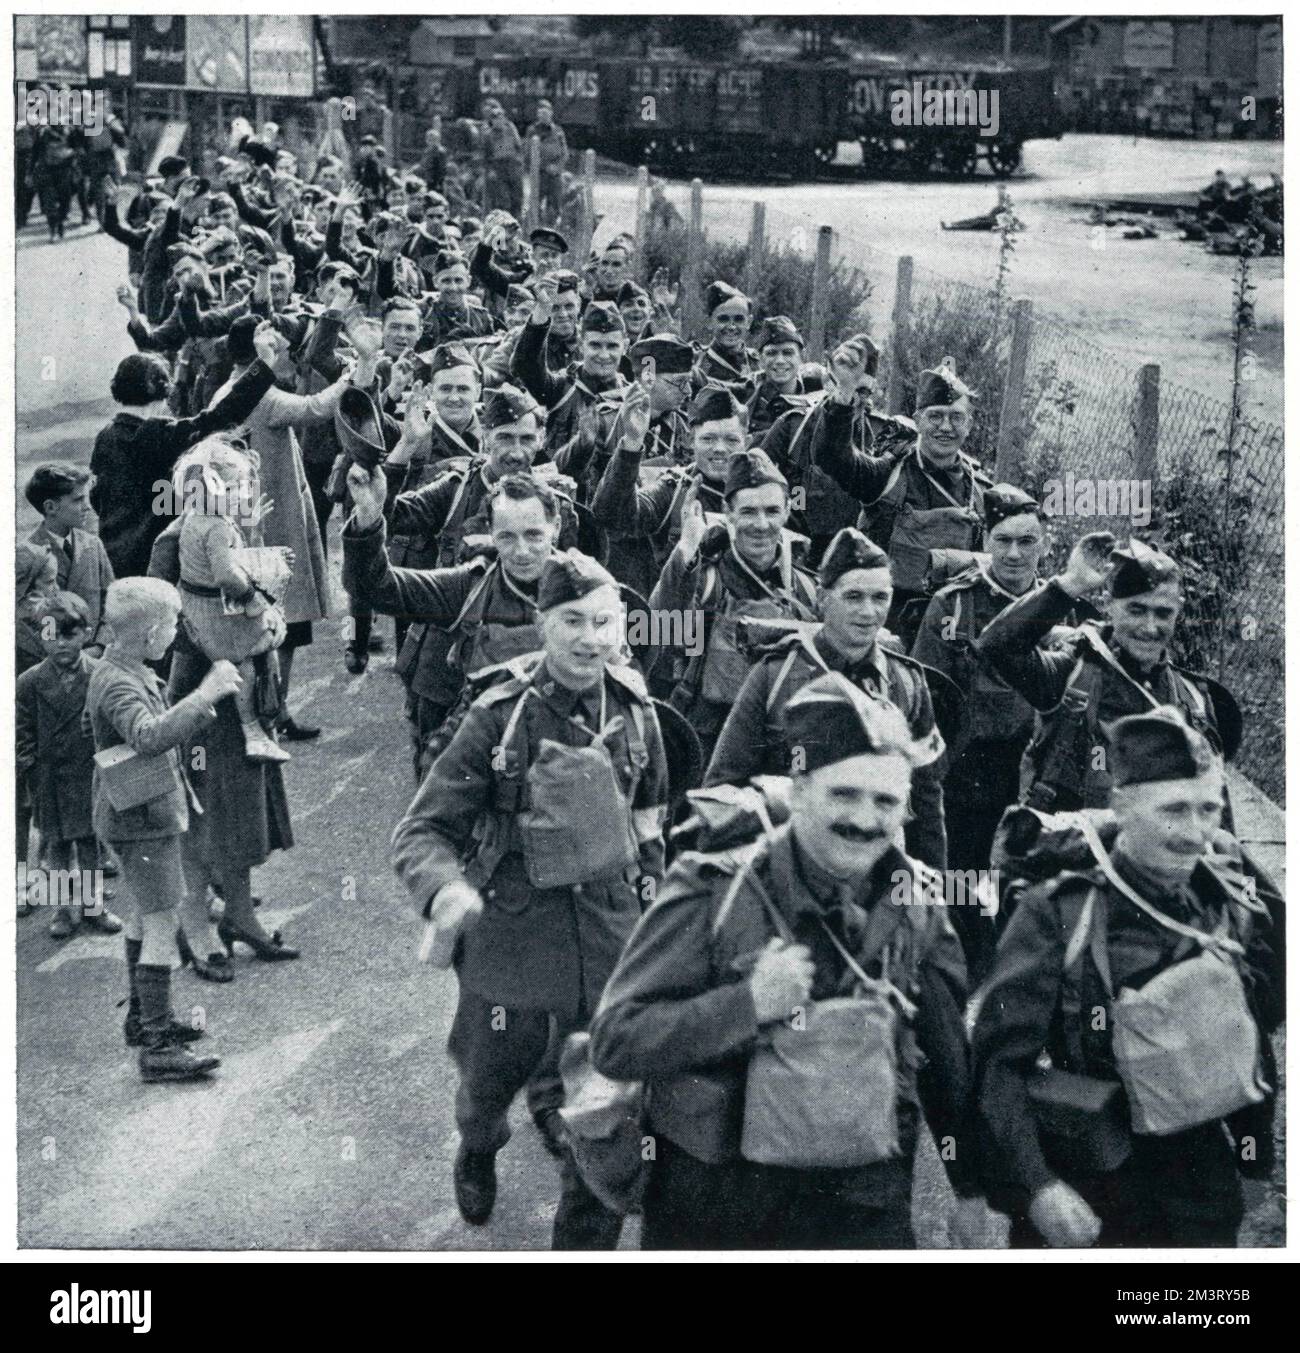 Los soldados británicos fotografiaron sonriendo mientras dejaban su casa para el Frente Occidental, unas semanas después de la Segunda Guerra Mundial. Las mujeres y los niños se muestran agitando mientras los hombres marchan, algunos de los cuales levantan sus sombreros en saludo. Fecha: 1939 Foto de stock